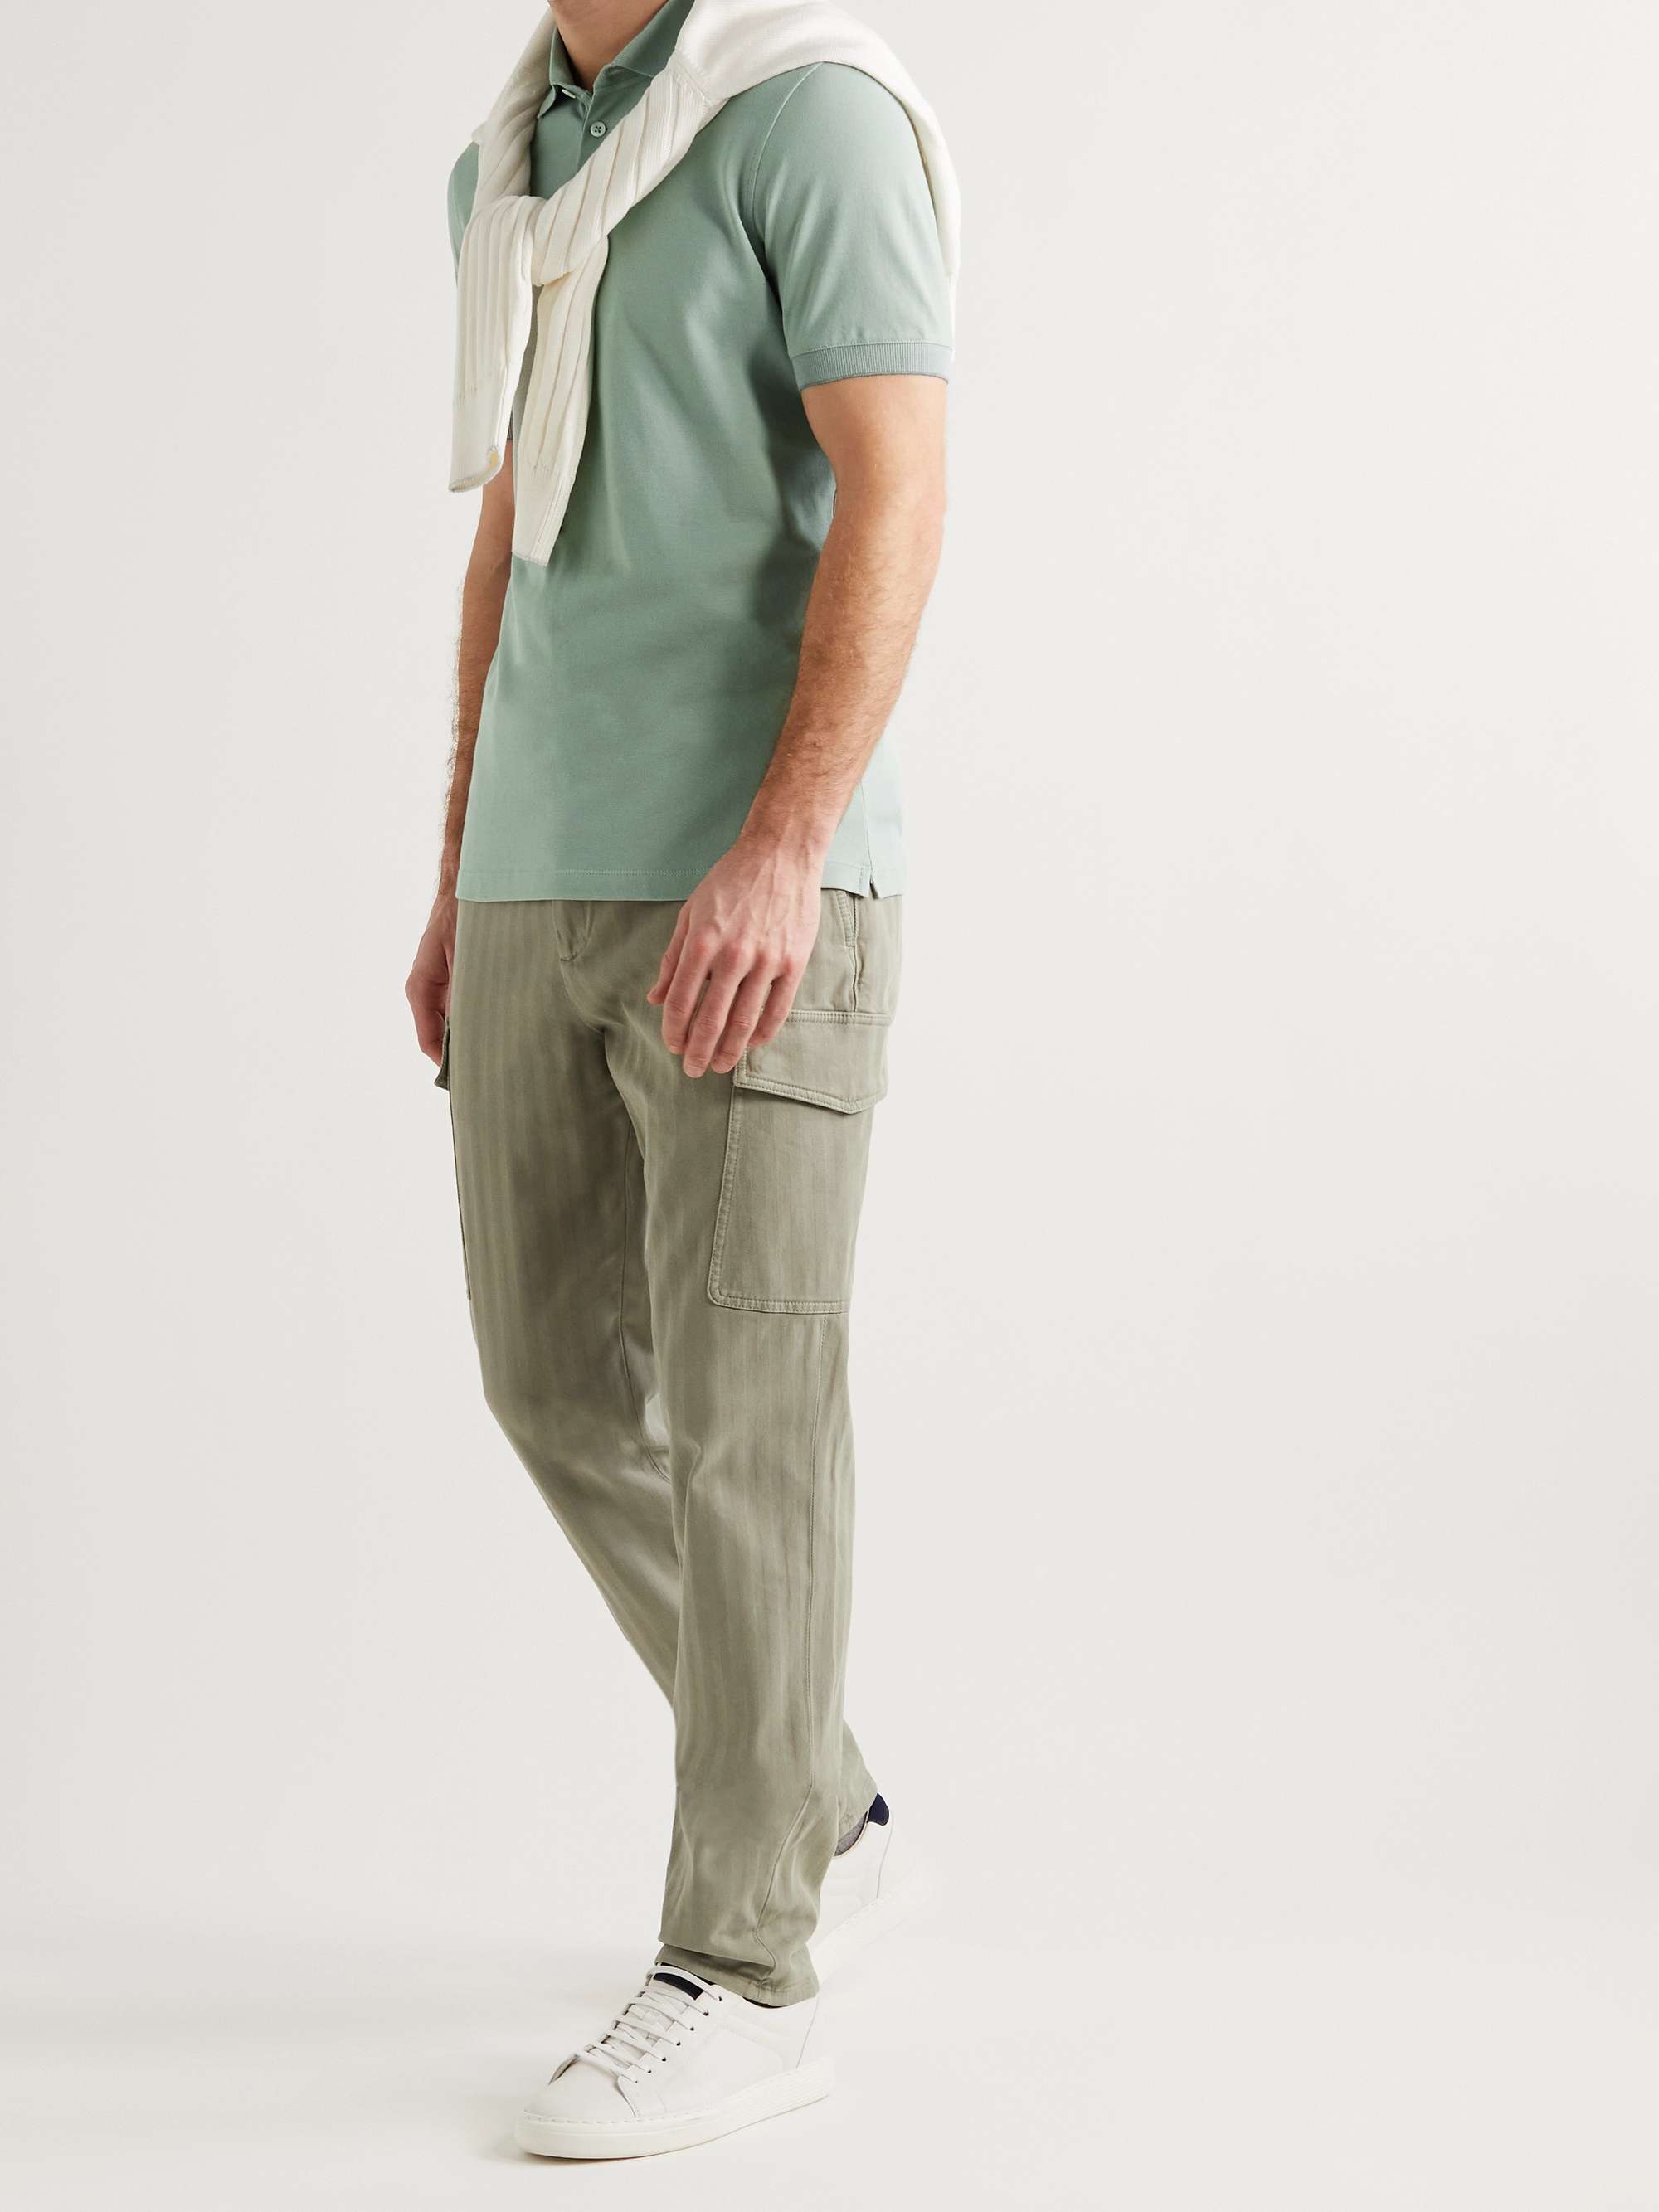 Slim-Fit Cotton-Piqué Polo Shirt